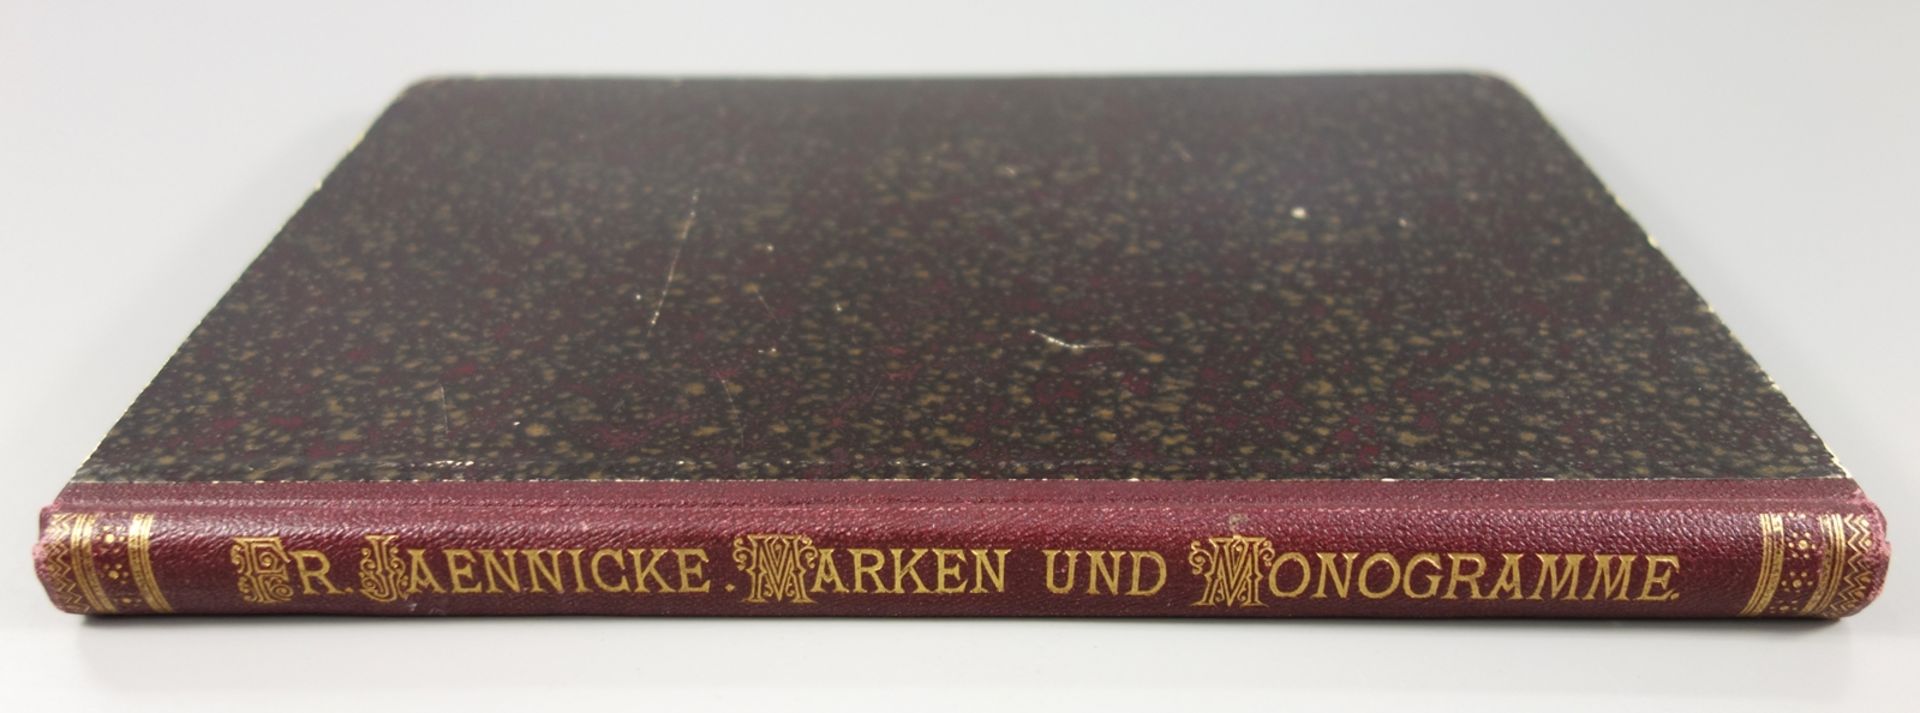 Marken und Monogramme auf Fayence, Porzellan, Steingut und sonstigen Keramischen Erzeugnissen, 1878, - Bild 2 aus 2